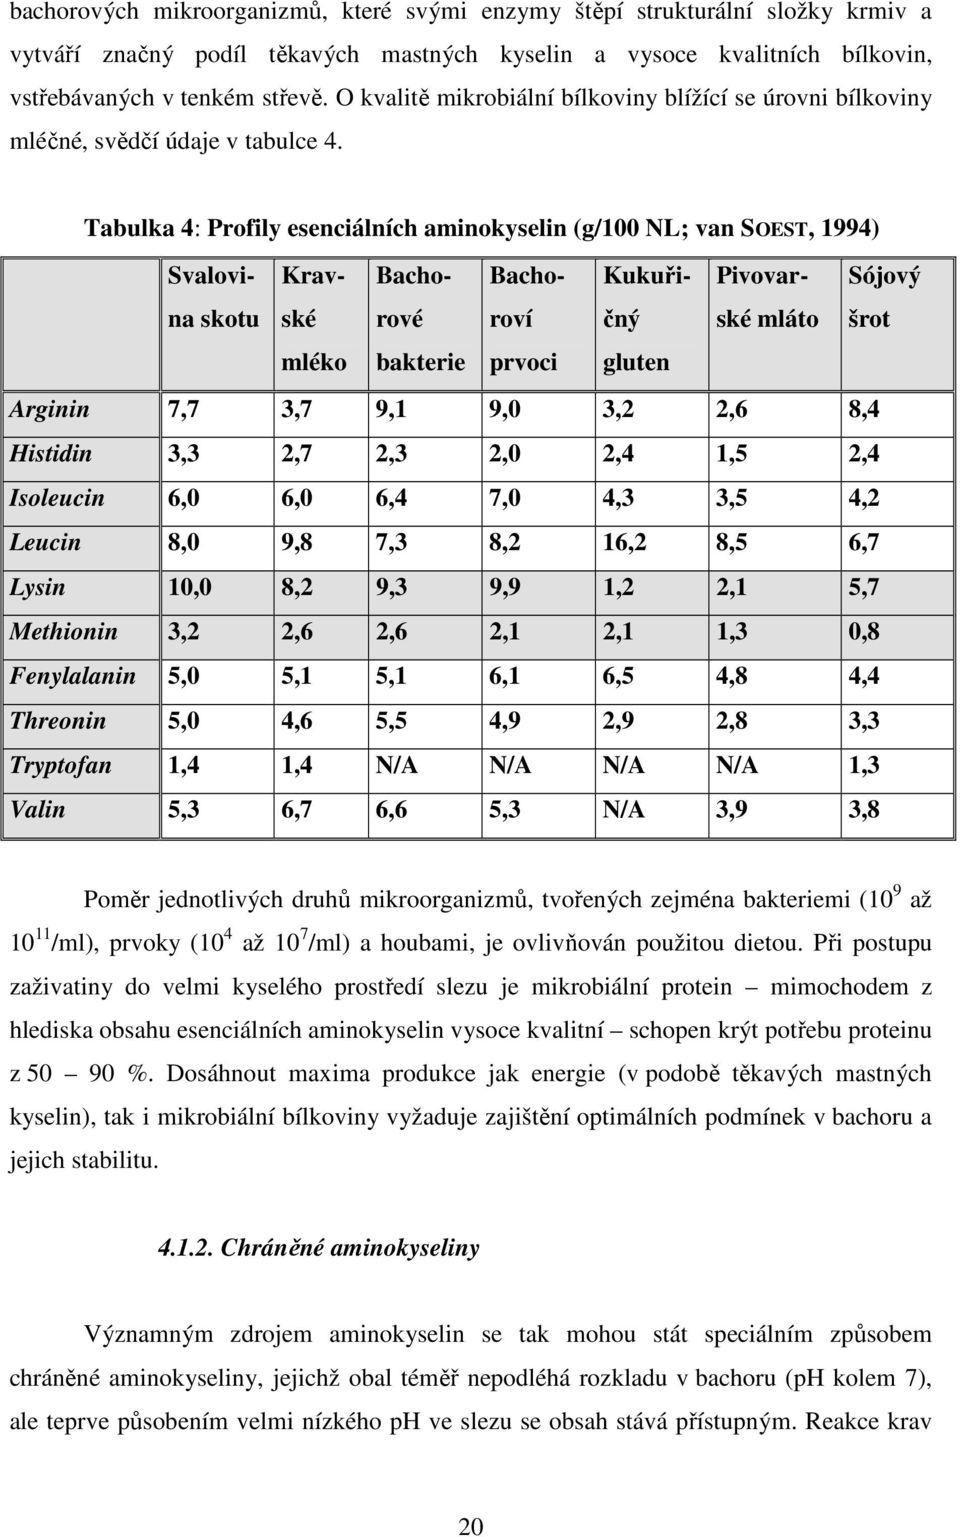 Tabulka 4: Profily esenciálních aminokyselin (g/100 NL; van SOEST, 1994) Svalovina skotu Kravské Bachorové Bachoroví Kukuřičný Pivovarské mláto Sójový šrot mléko bakterie prvoci gluten Arginin 7,7